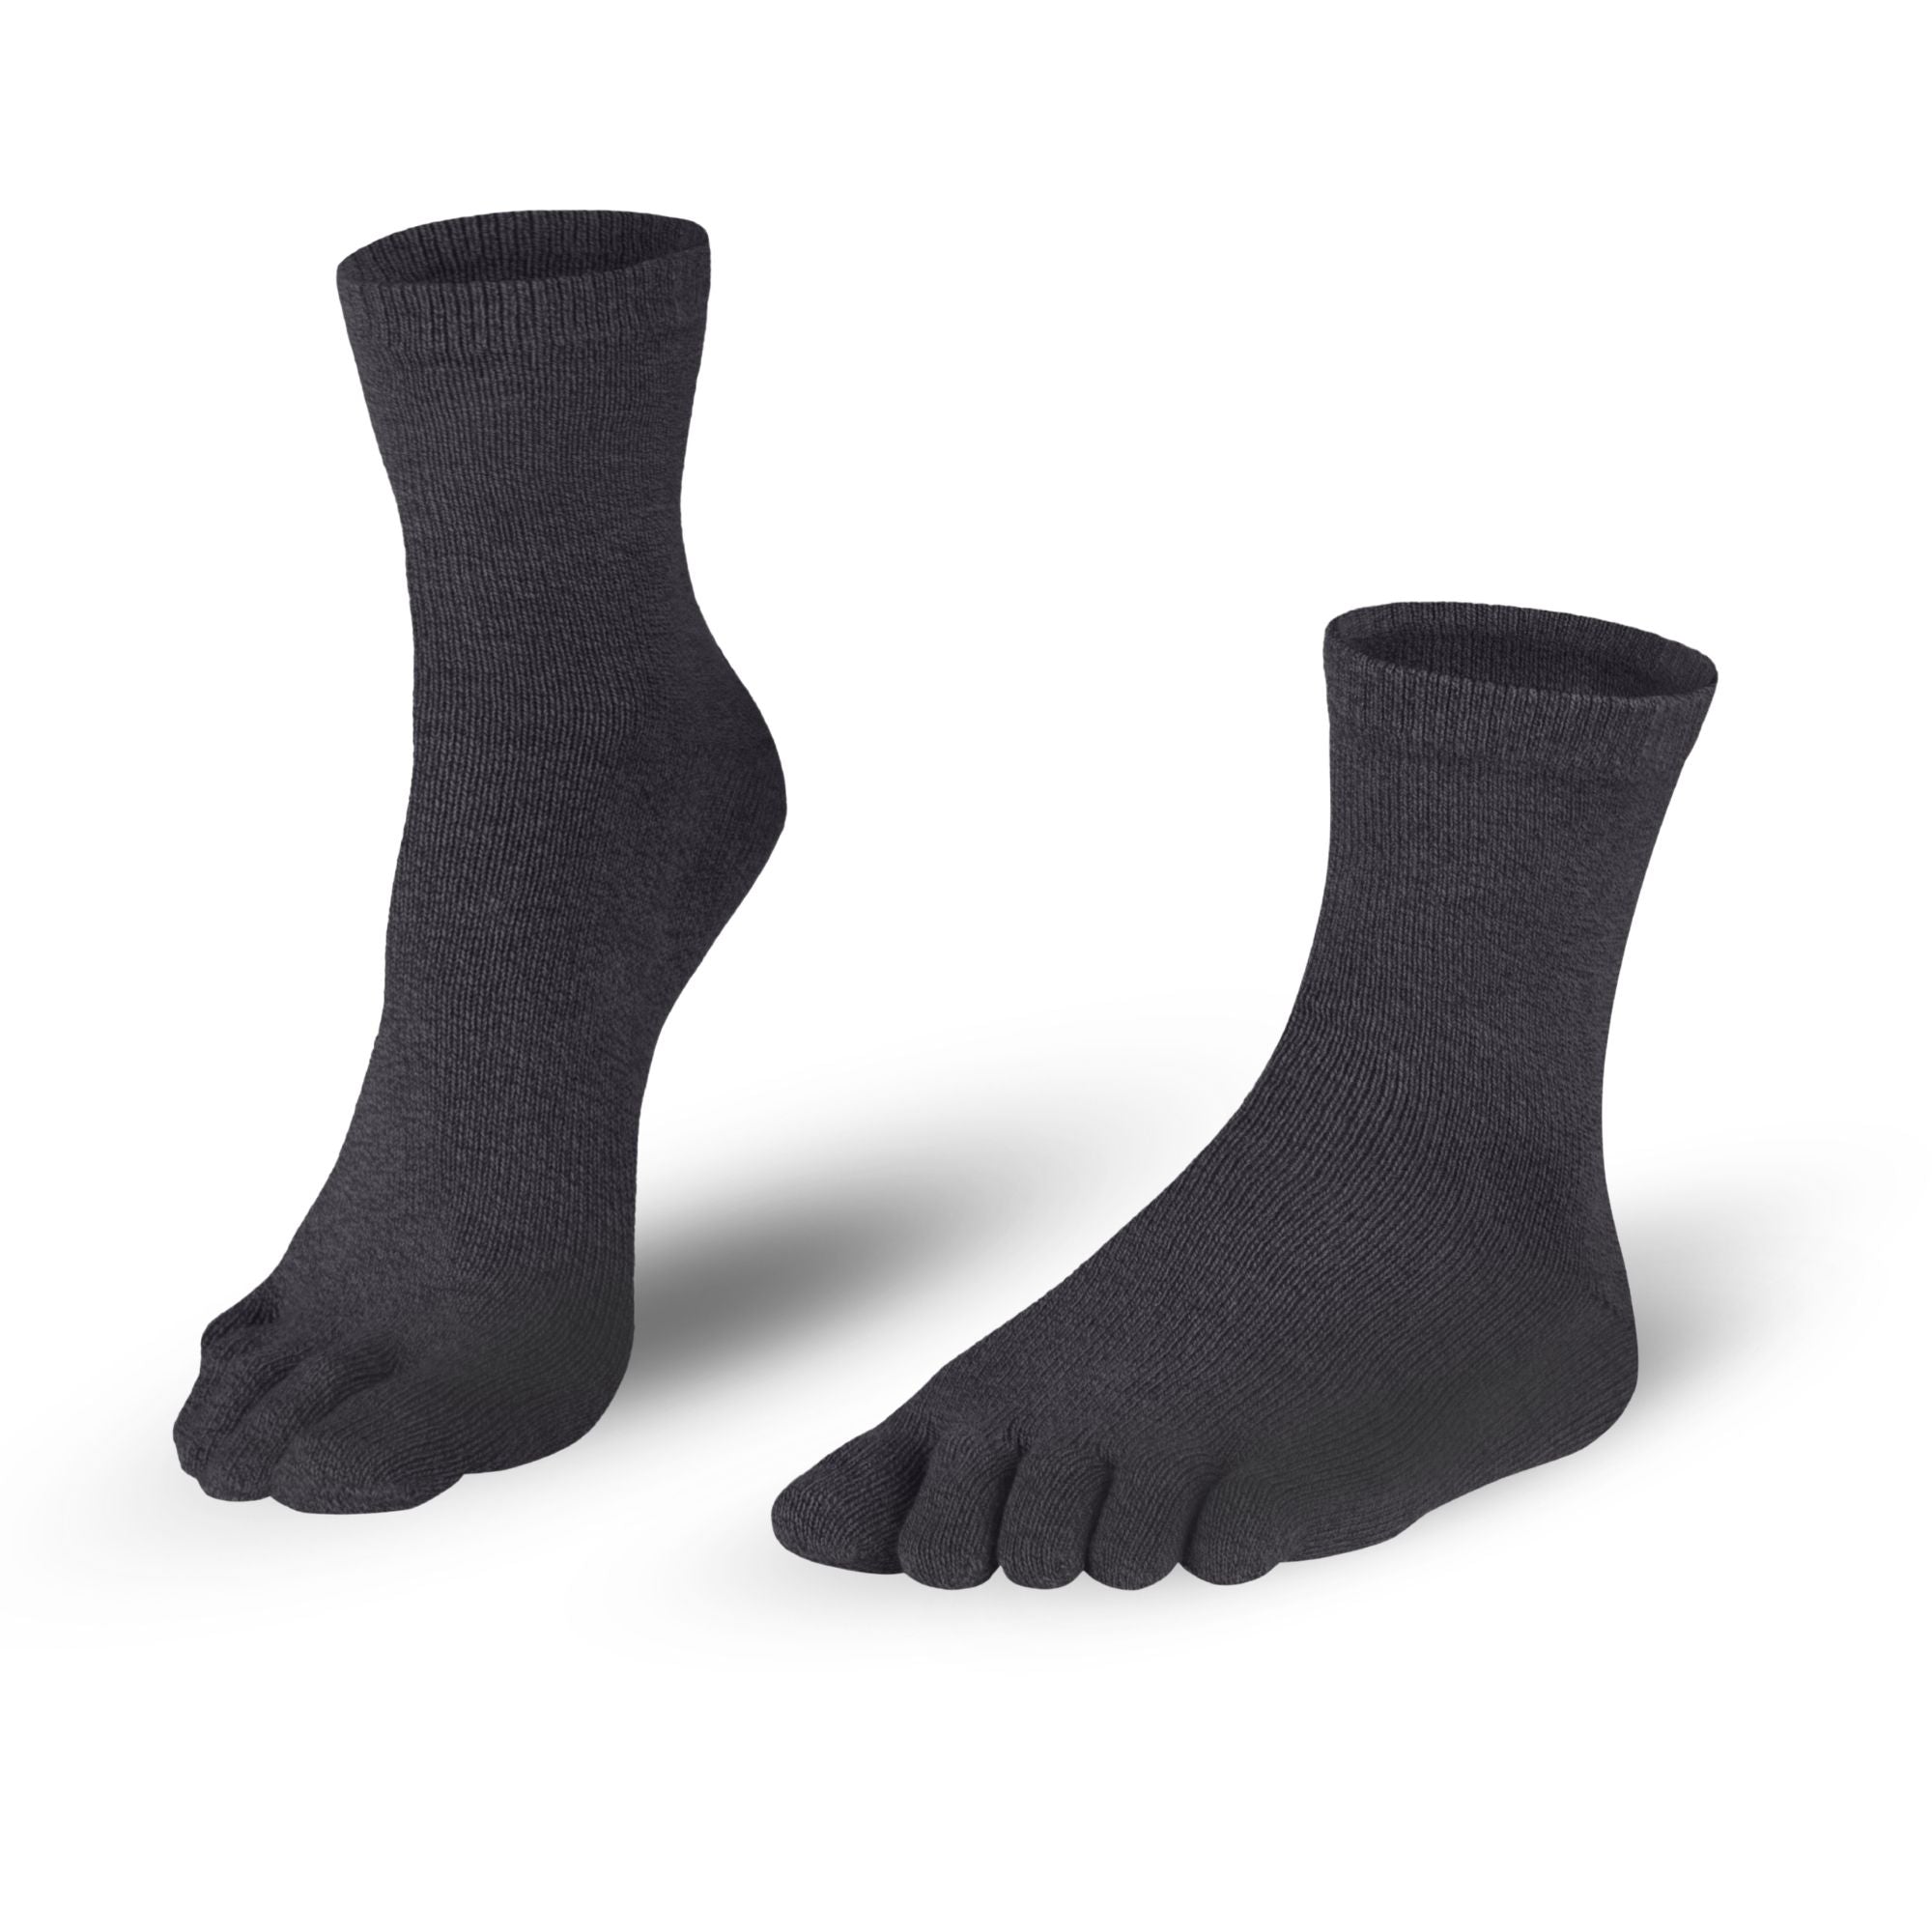 Cotton toe socks socks in navy blue for men and women